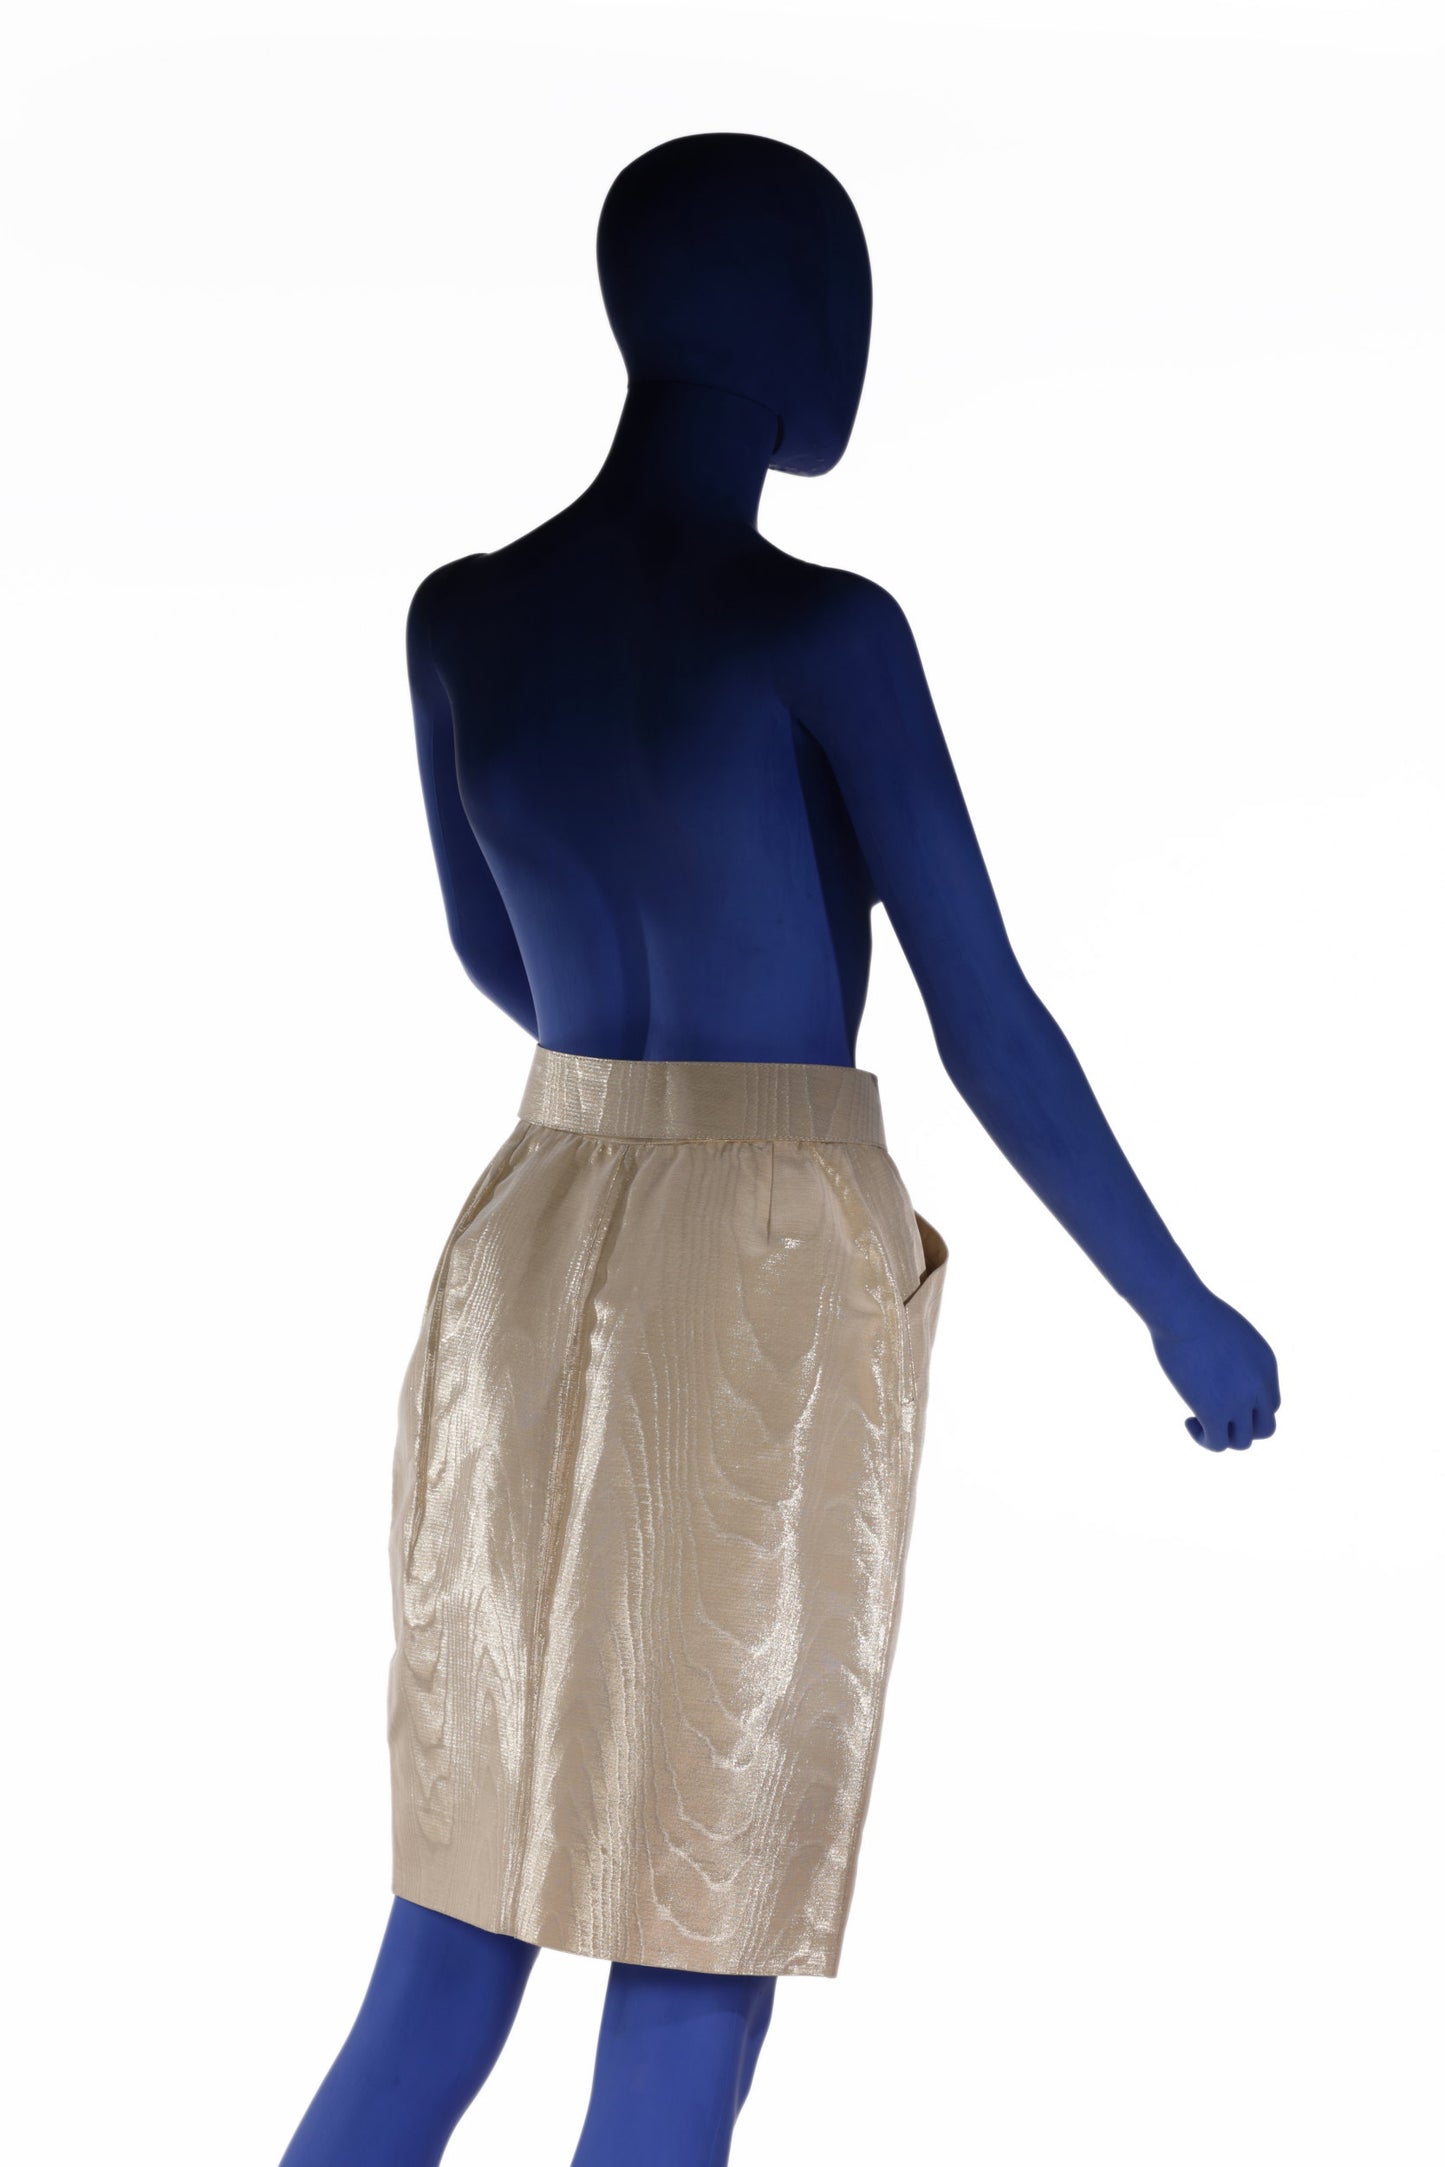 Yves Saint Laurent Rive gauche golden skirt